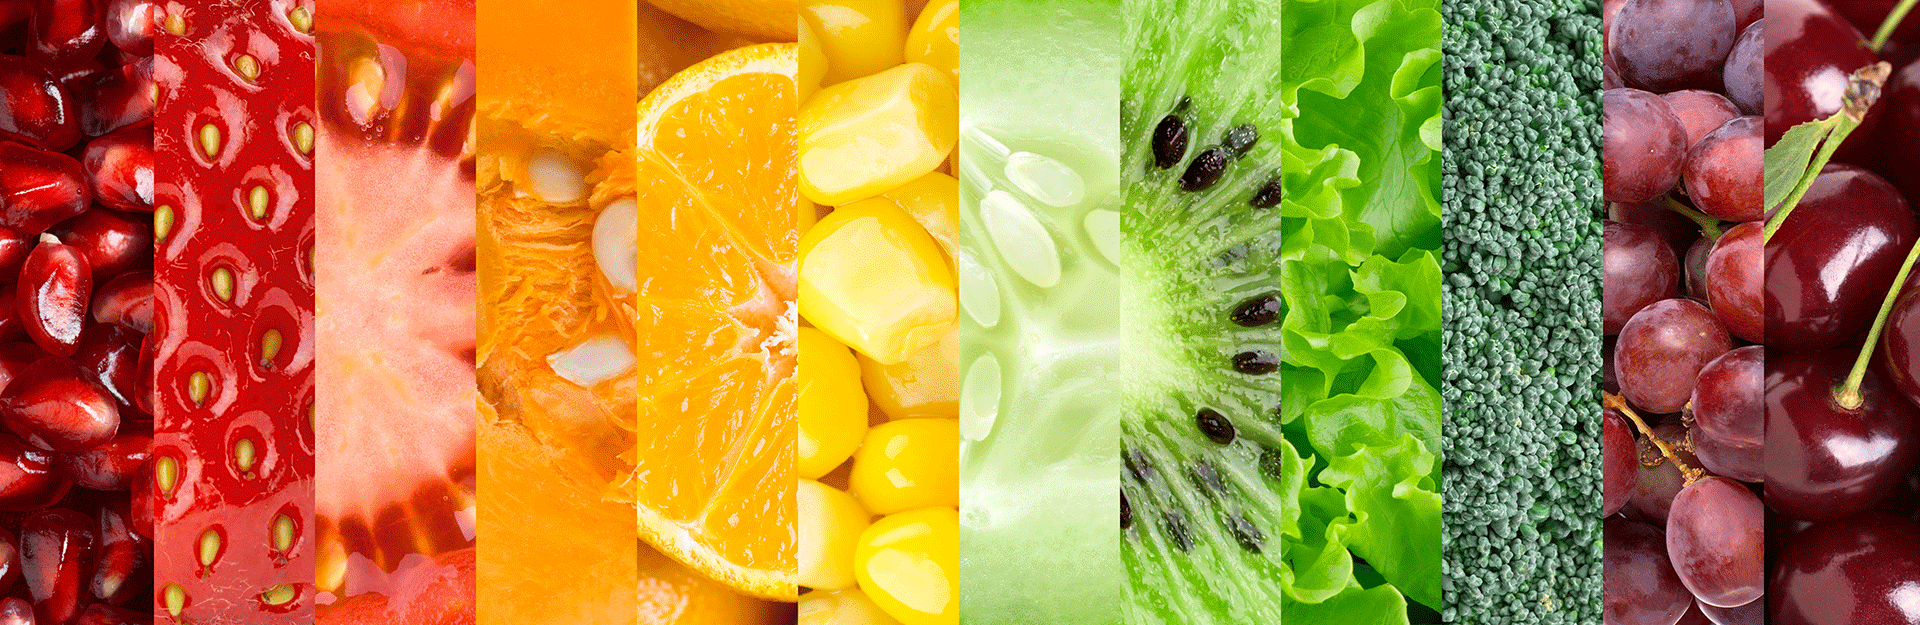 closeup of various fruits